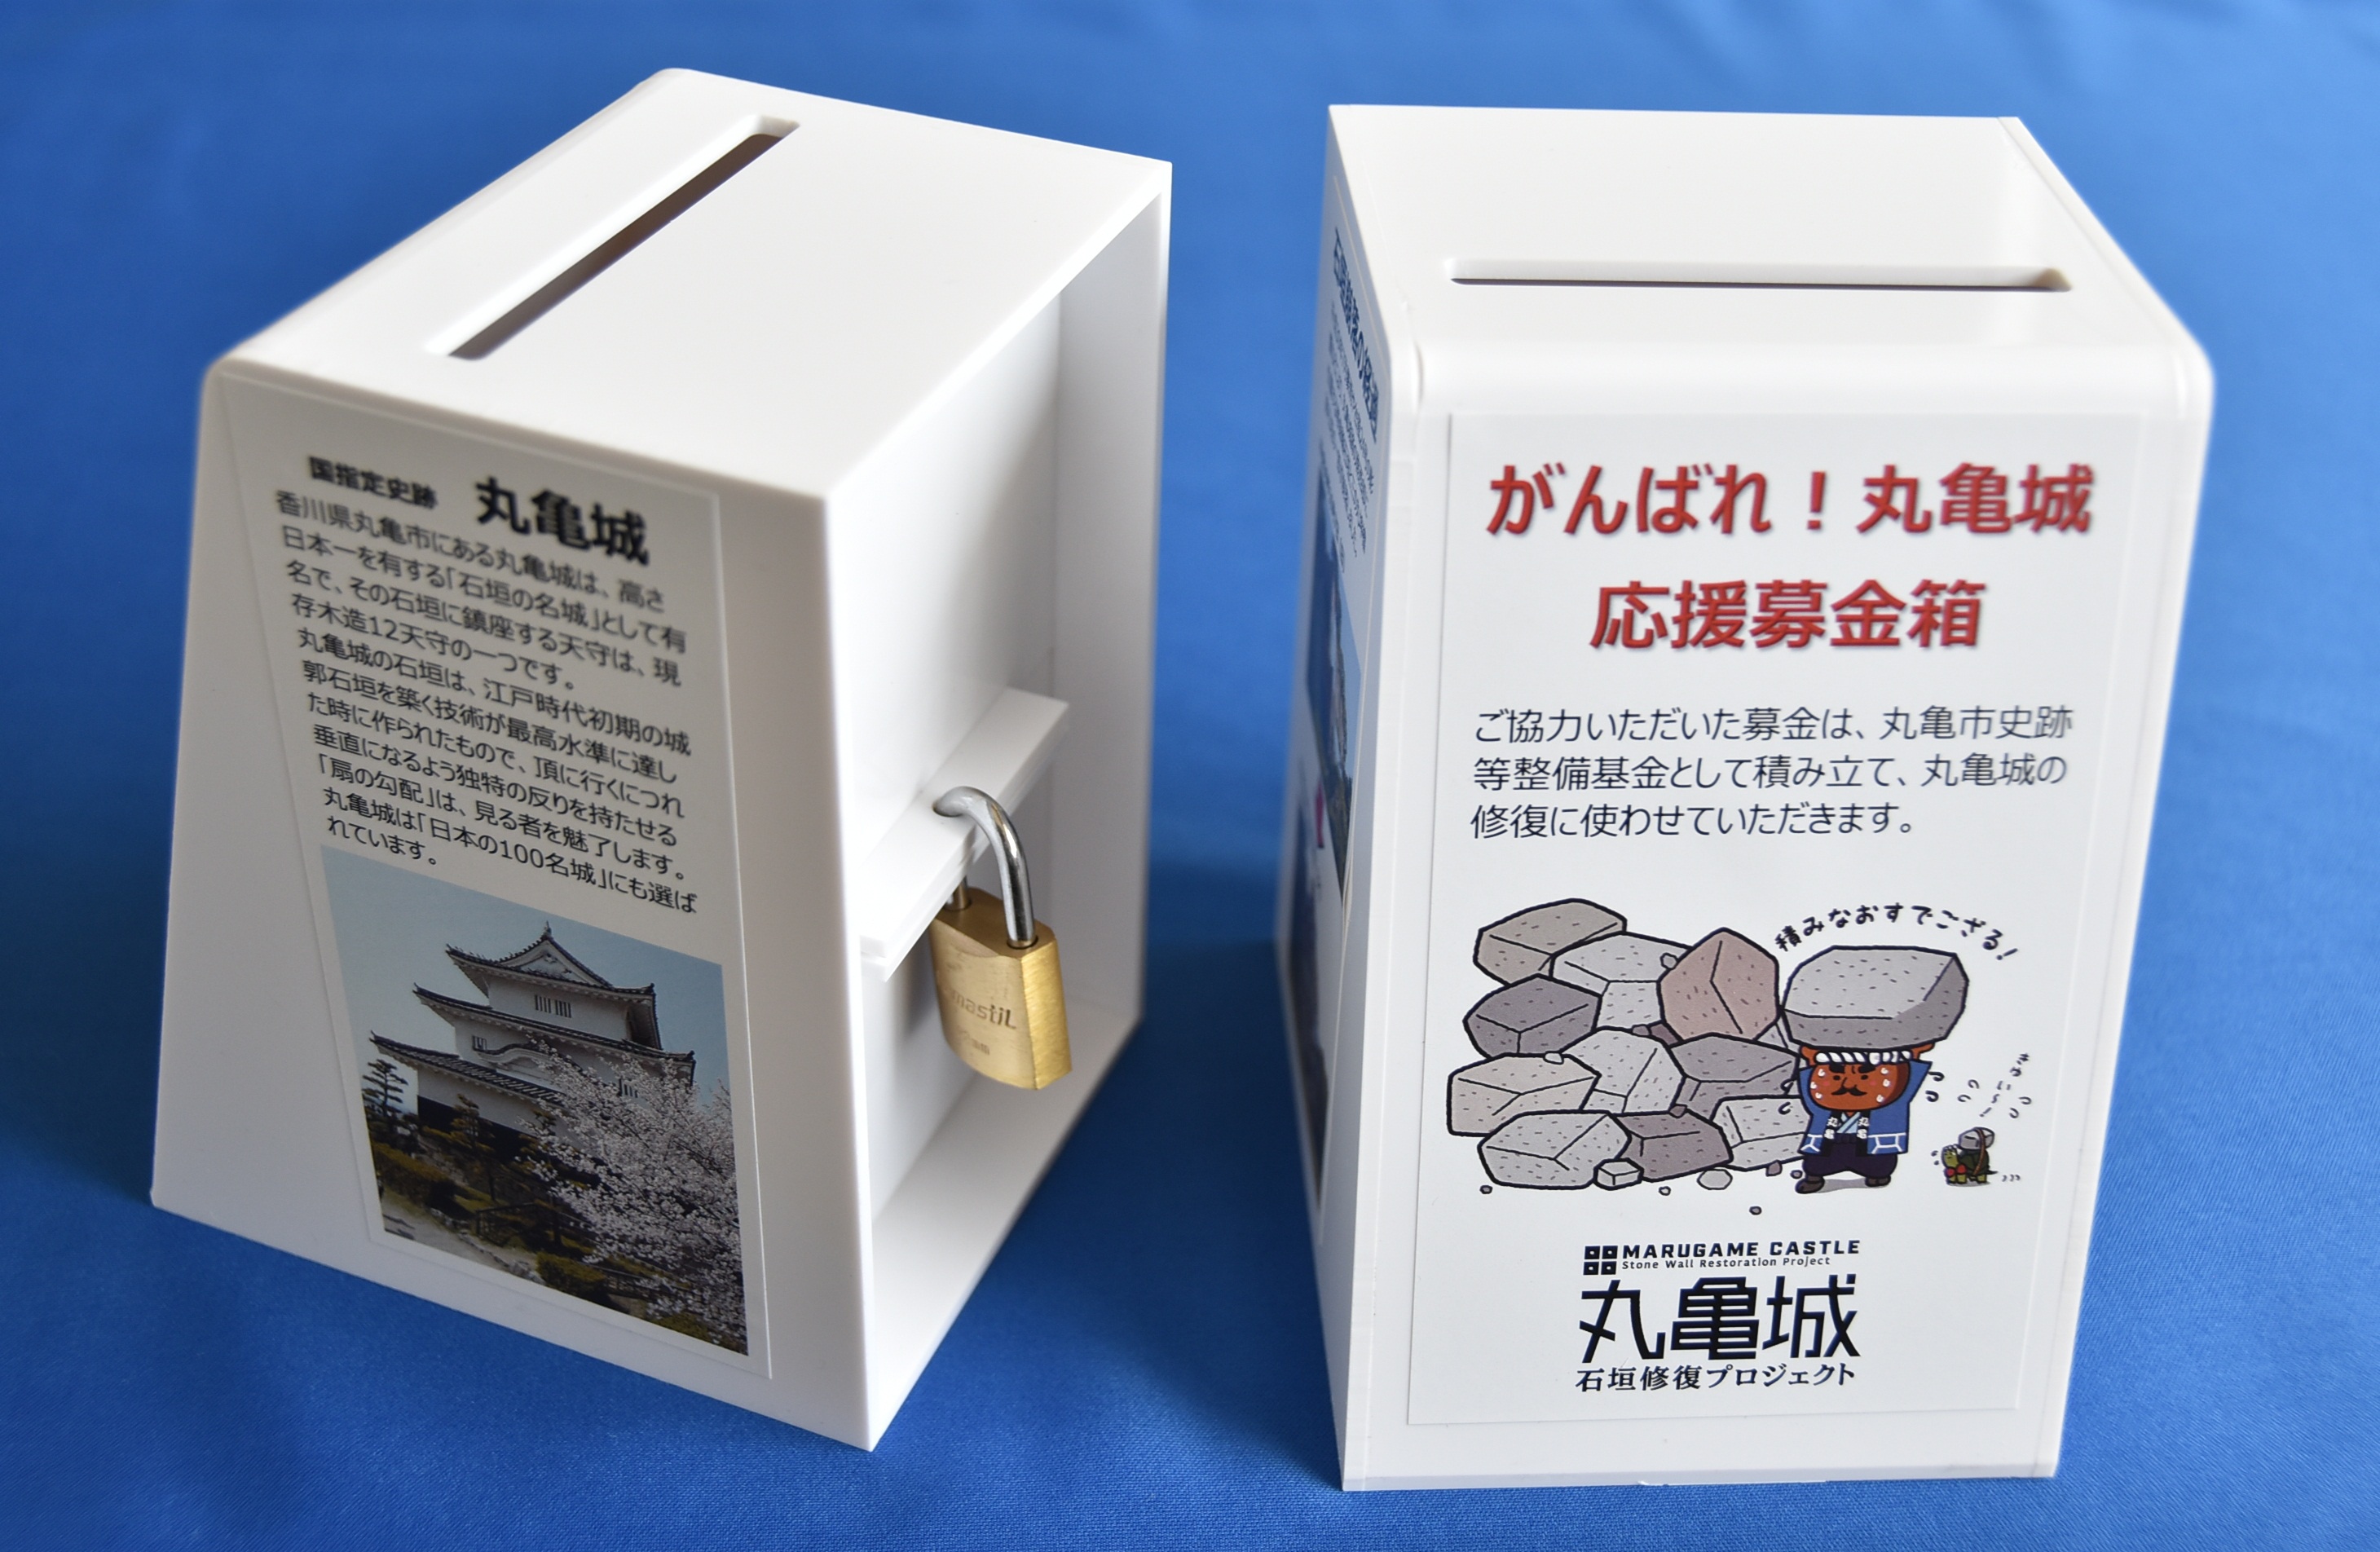 「がんばれ！丸亀城応援募金」 募金箱をリニューアルしましたの画像